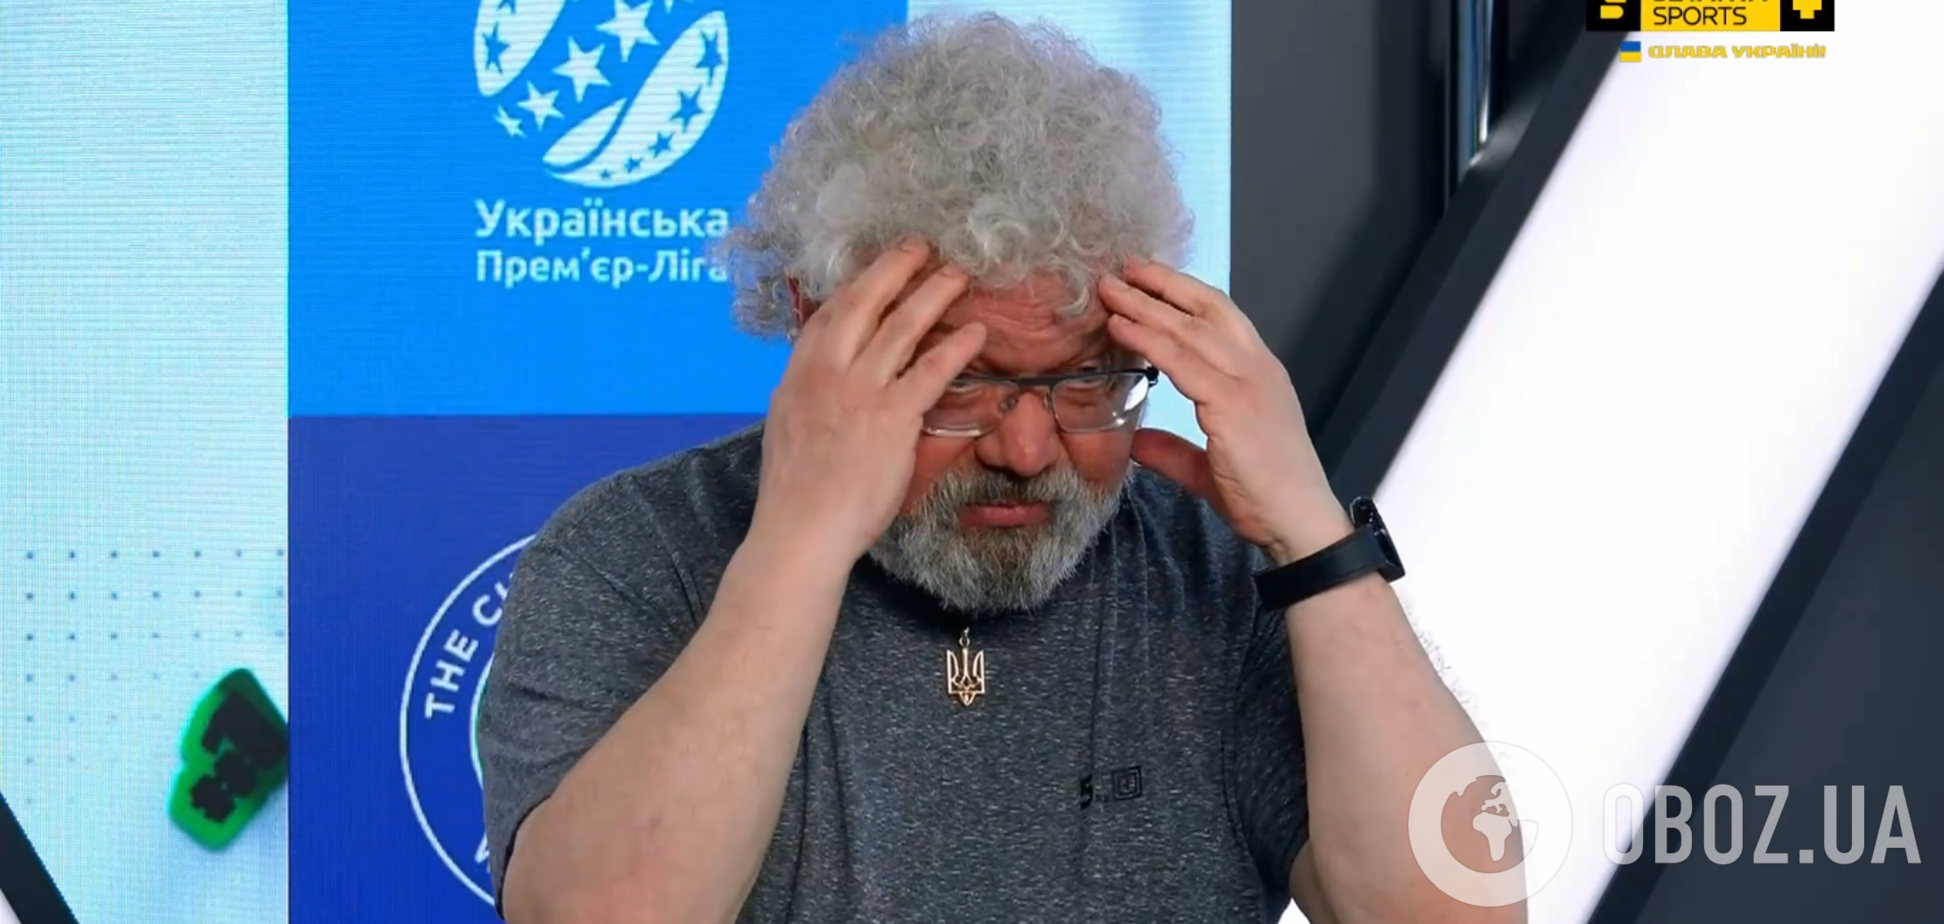 Знаменитого украинского мецената выгнали из телестудии за русский язык. Видео